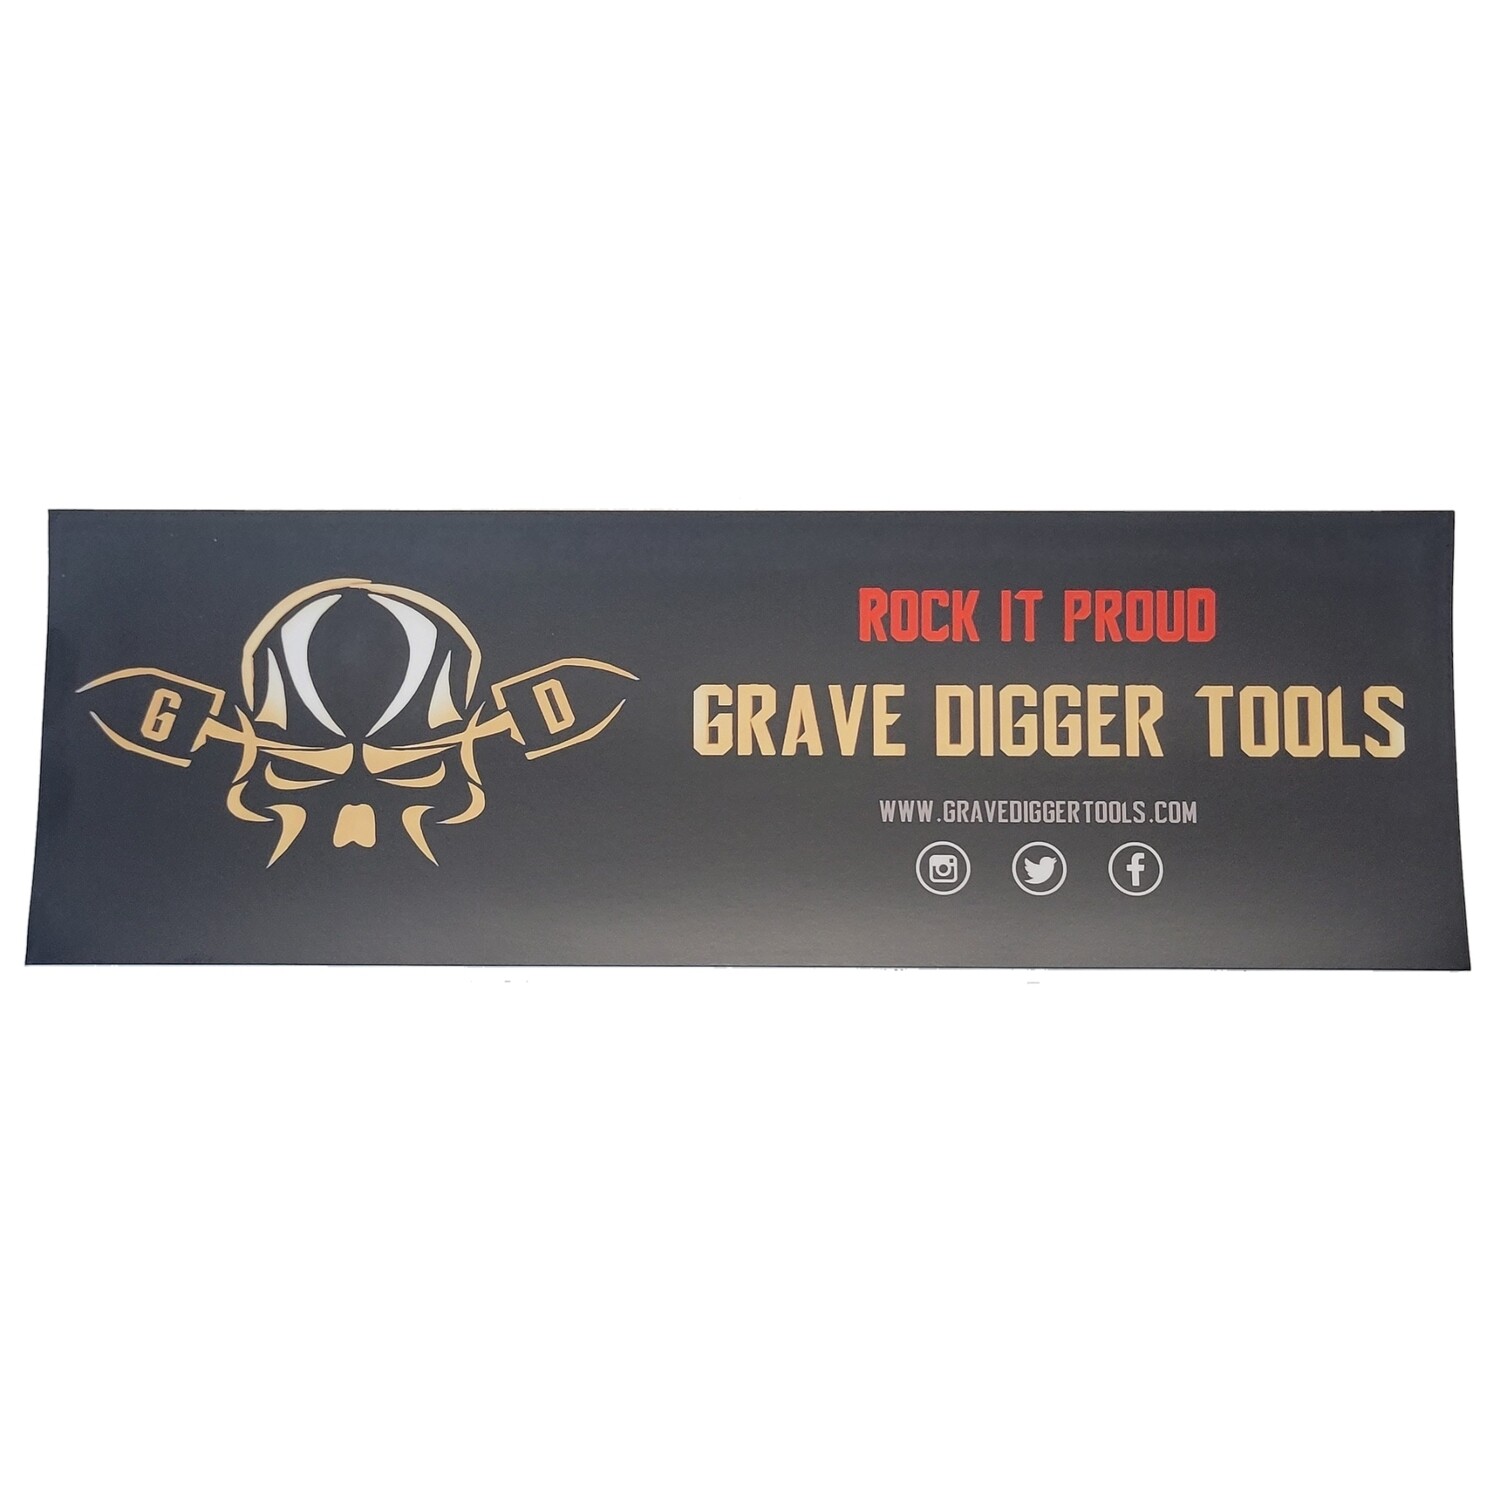 Grave Digger Tools 11.5" x 3.75" Vinyl Bumper Sticker